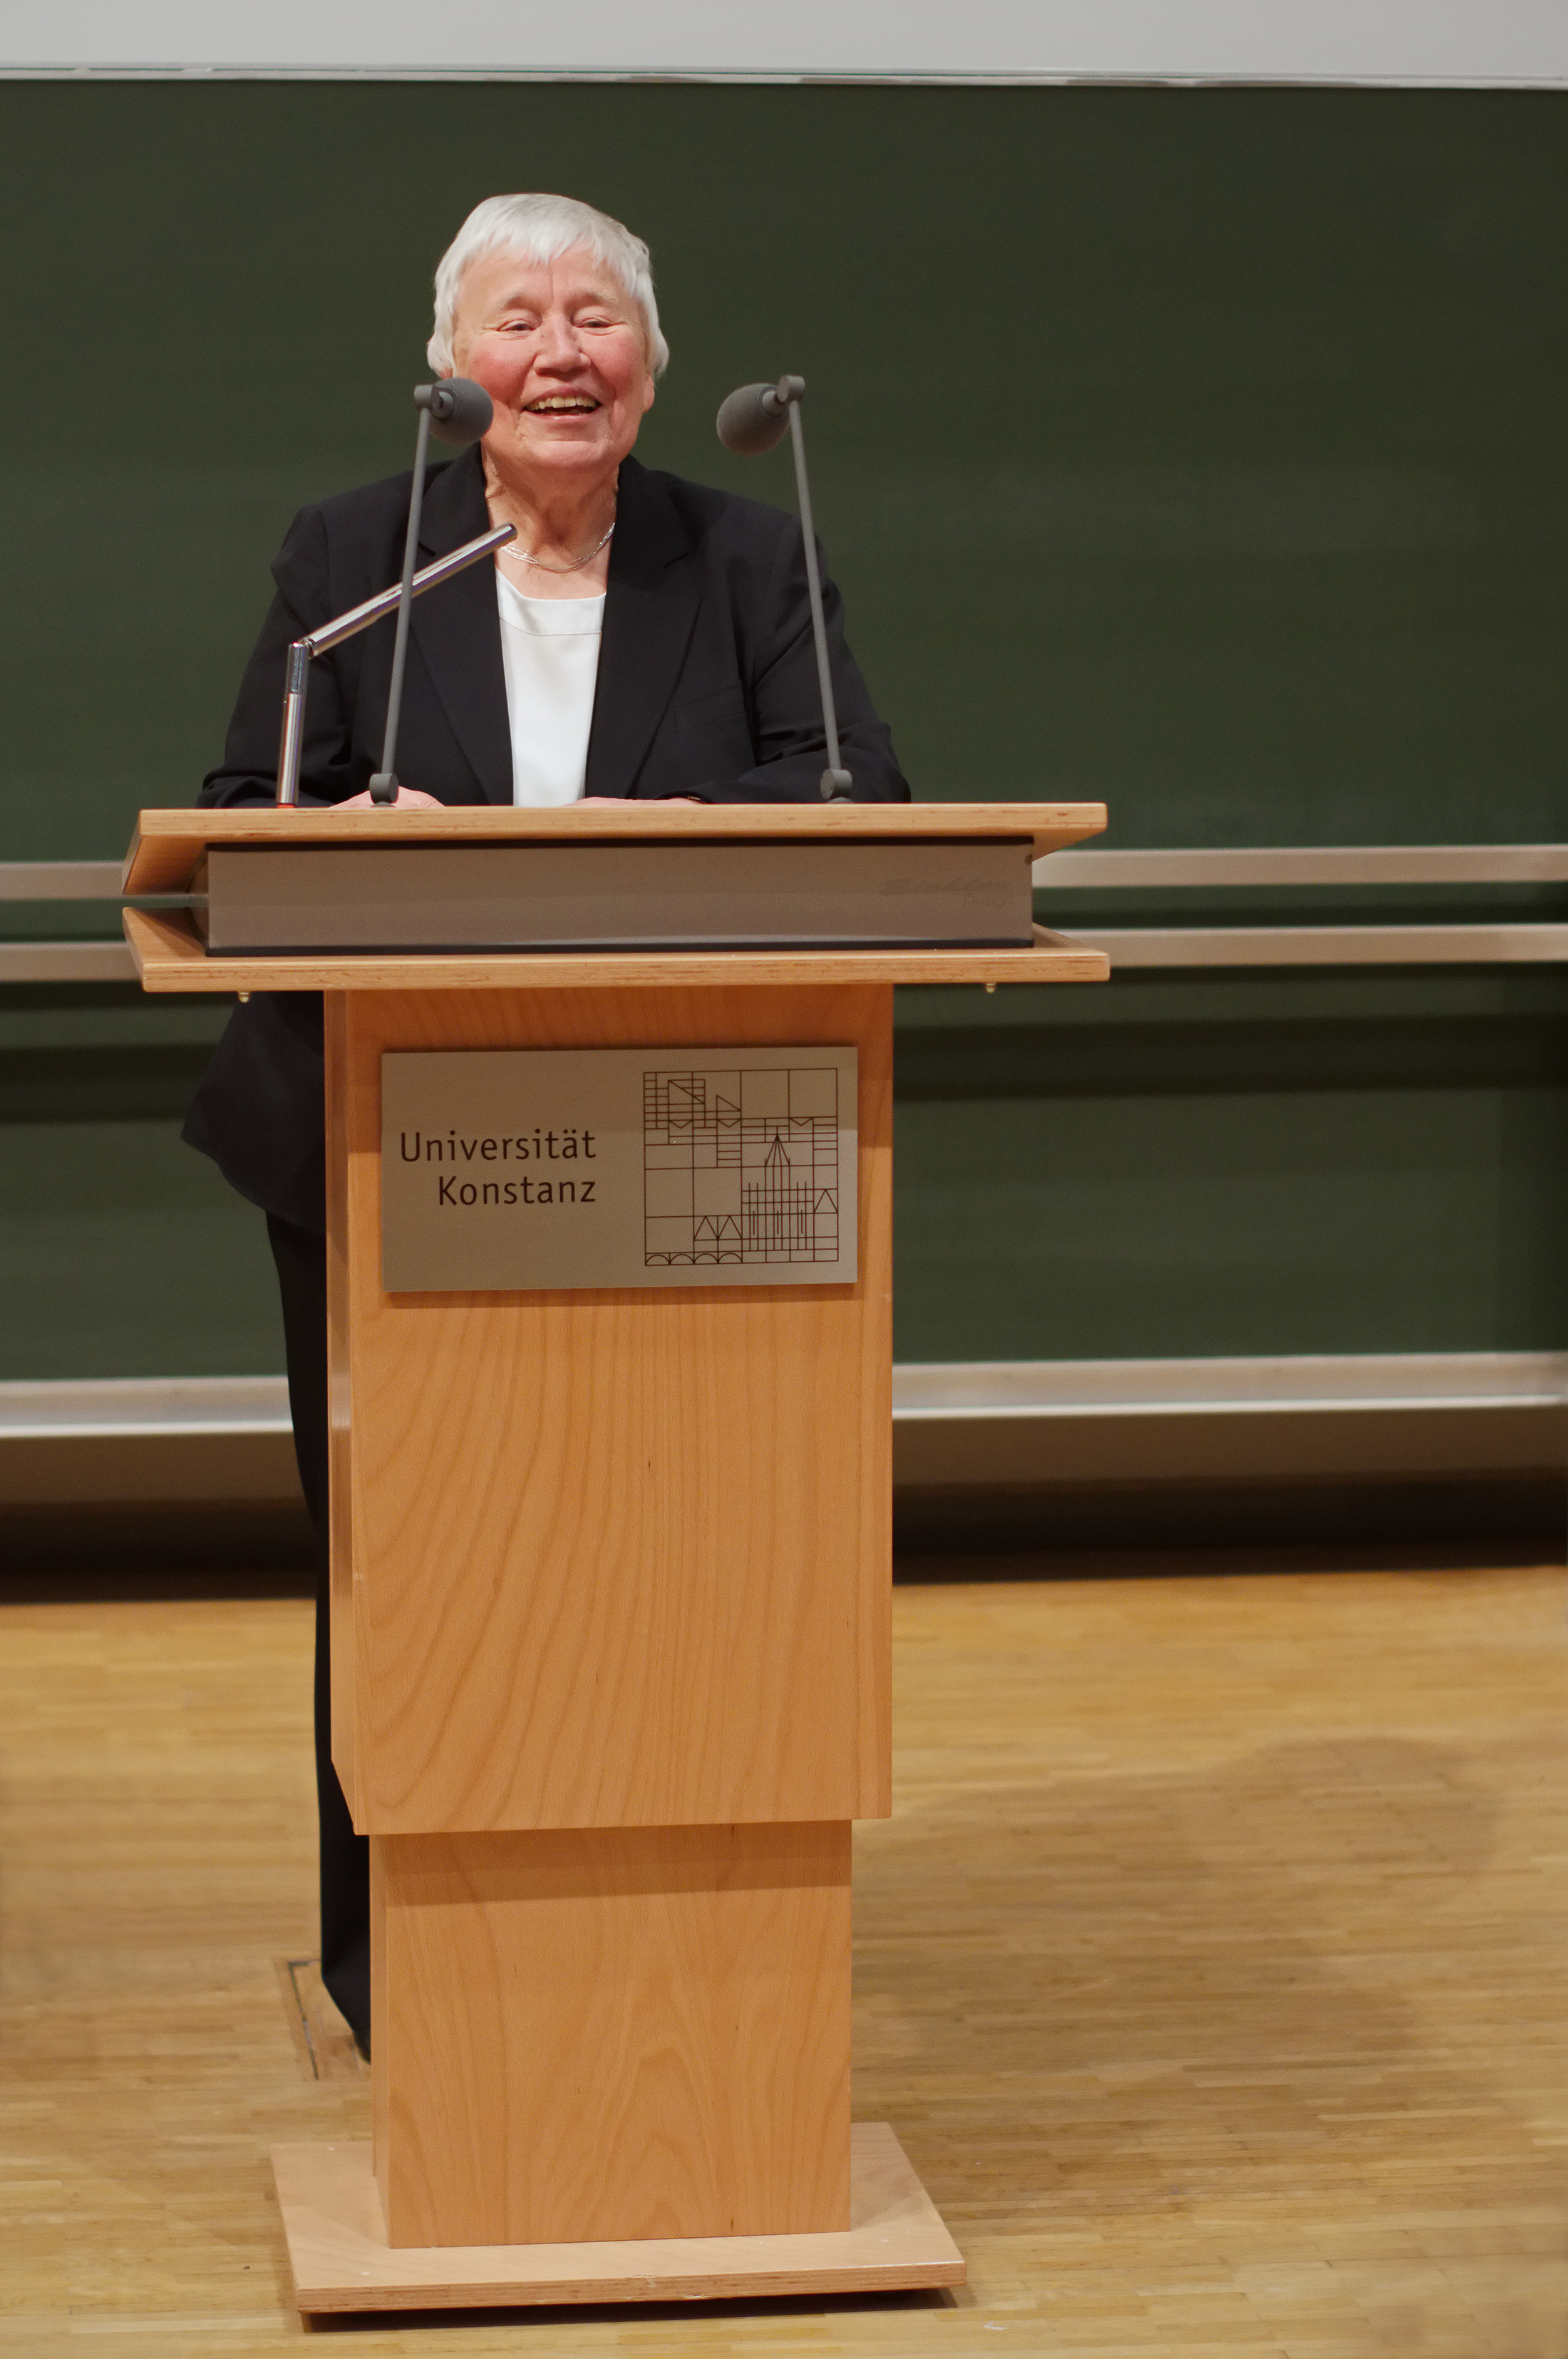 Preisträgerin Marga Klein hält eine Rede.